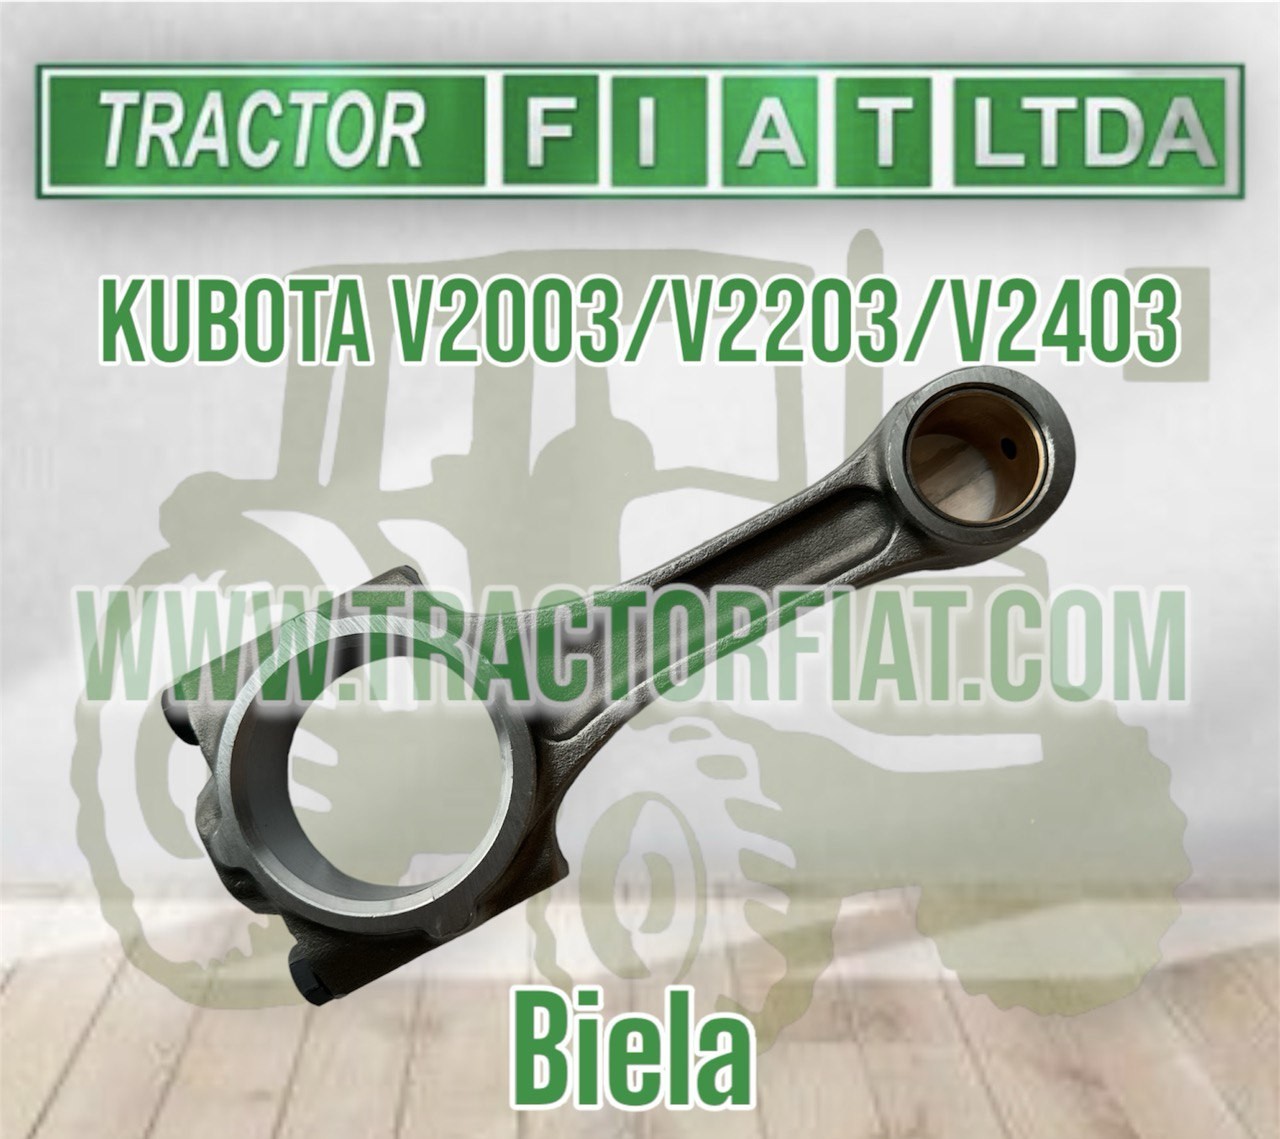 BIELA RECTA - MOTOR KUBOTA V2003 / V2403 / V2203